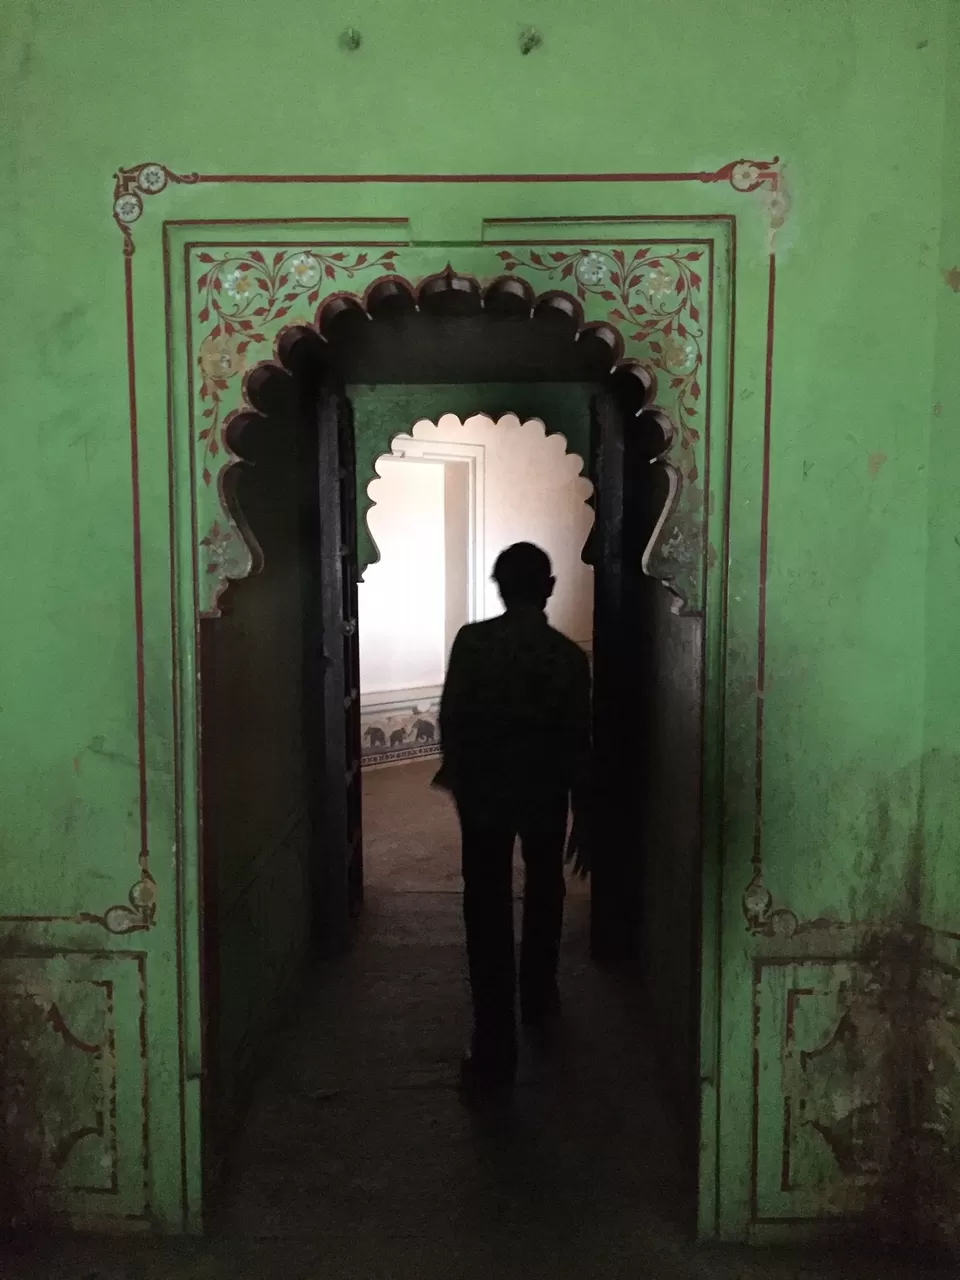 Photo of Kumbhalgarh Fort, Qila Kumbhalgarh, Rajasthan 313325, India by Lishita Jain